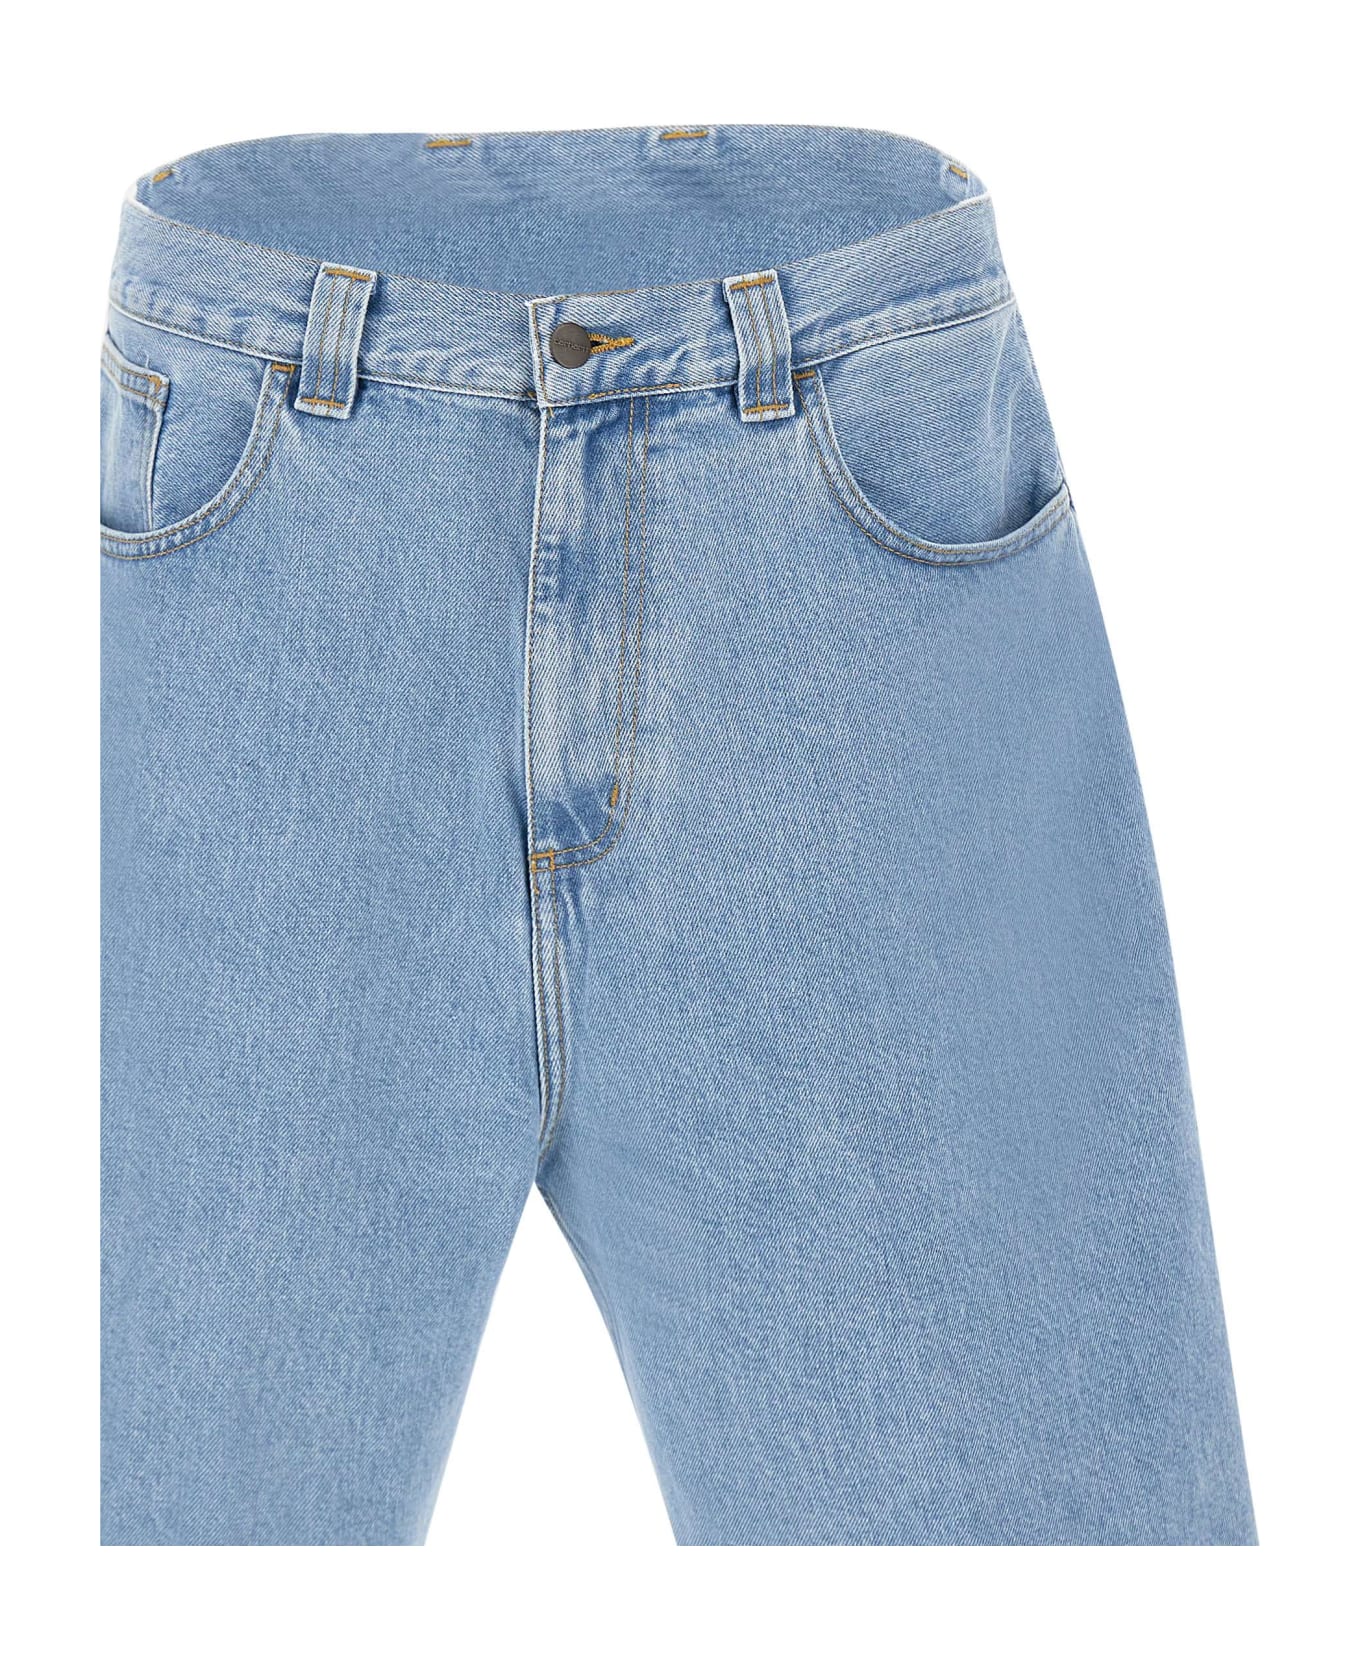 Carhartt 'landon Short' Shorts - BLUE